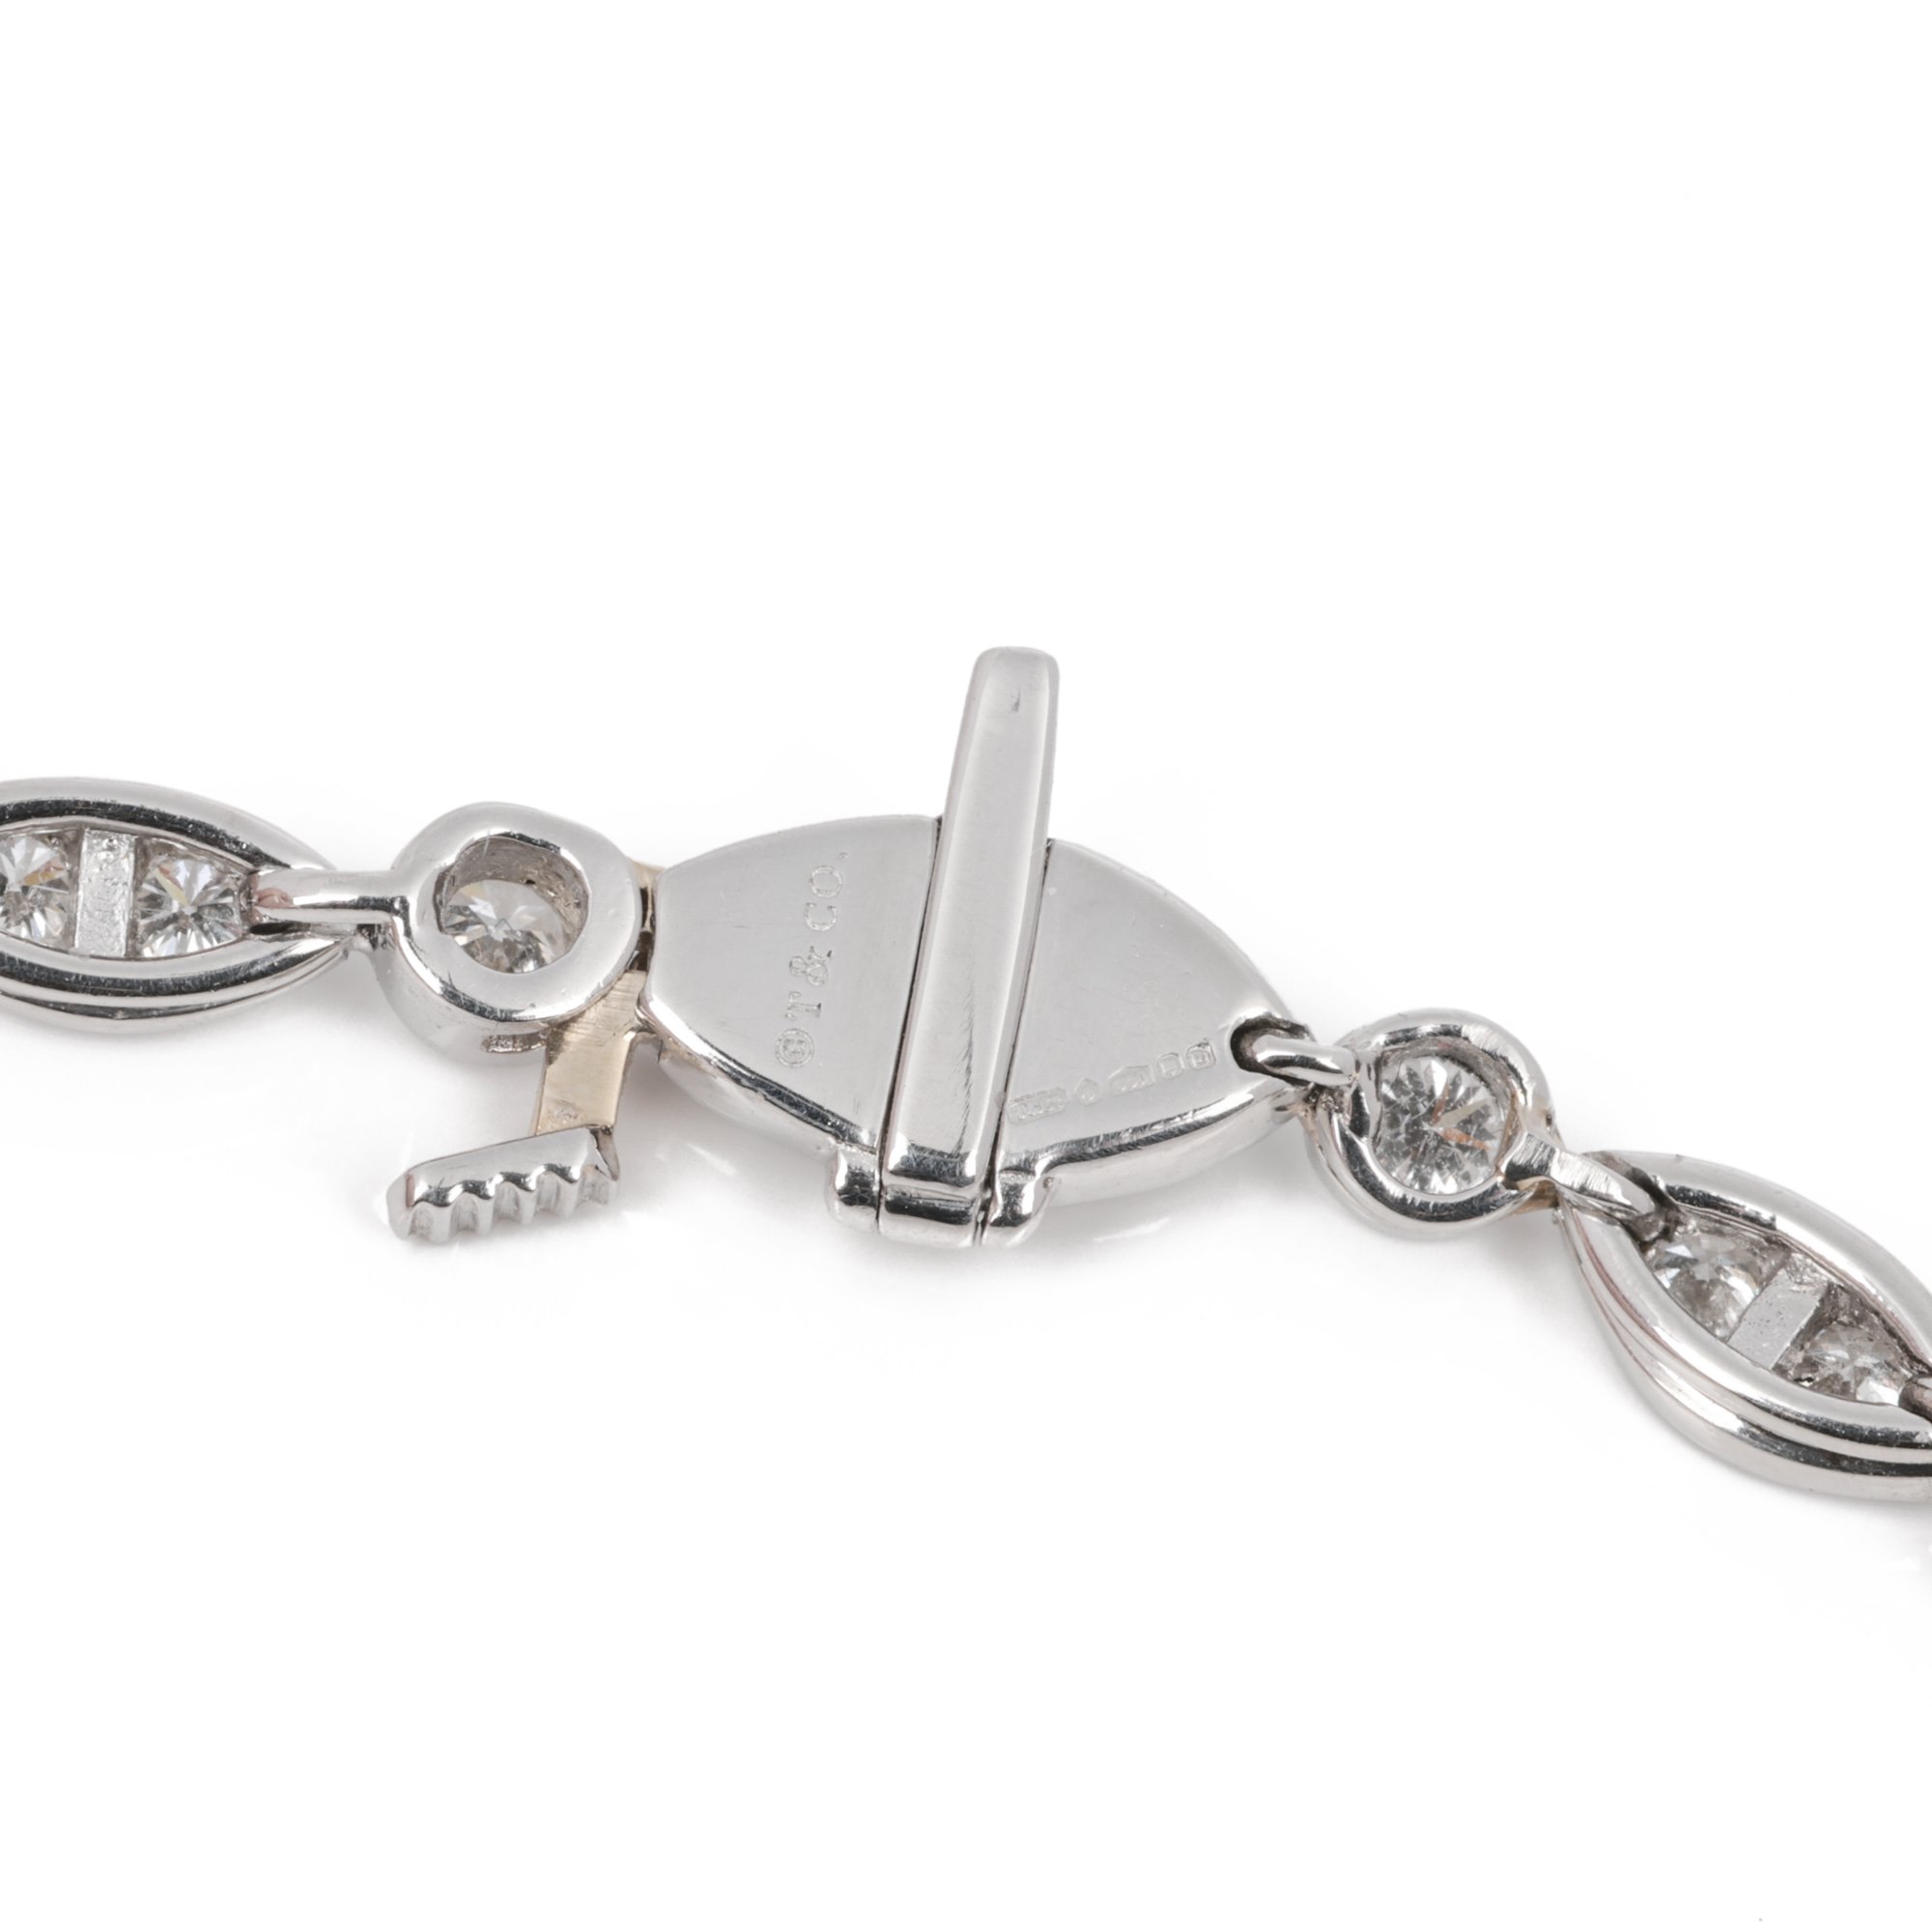 Tiffany & Co. Jazz 1.6ct Diamond Tennis bracelet